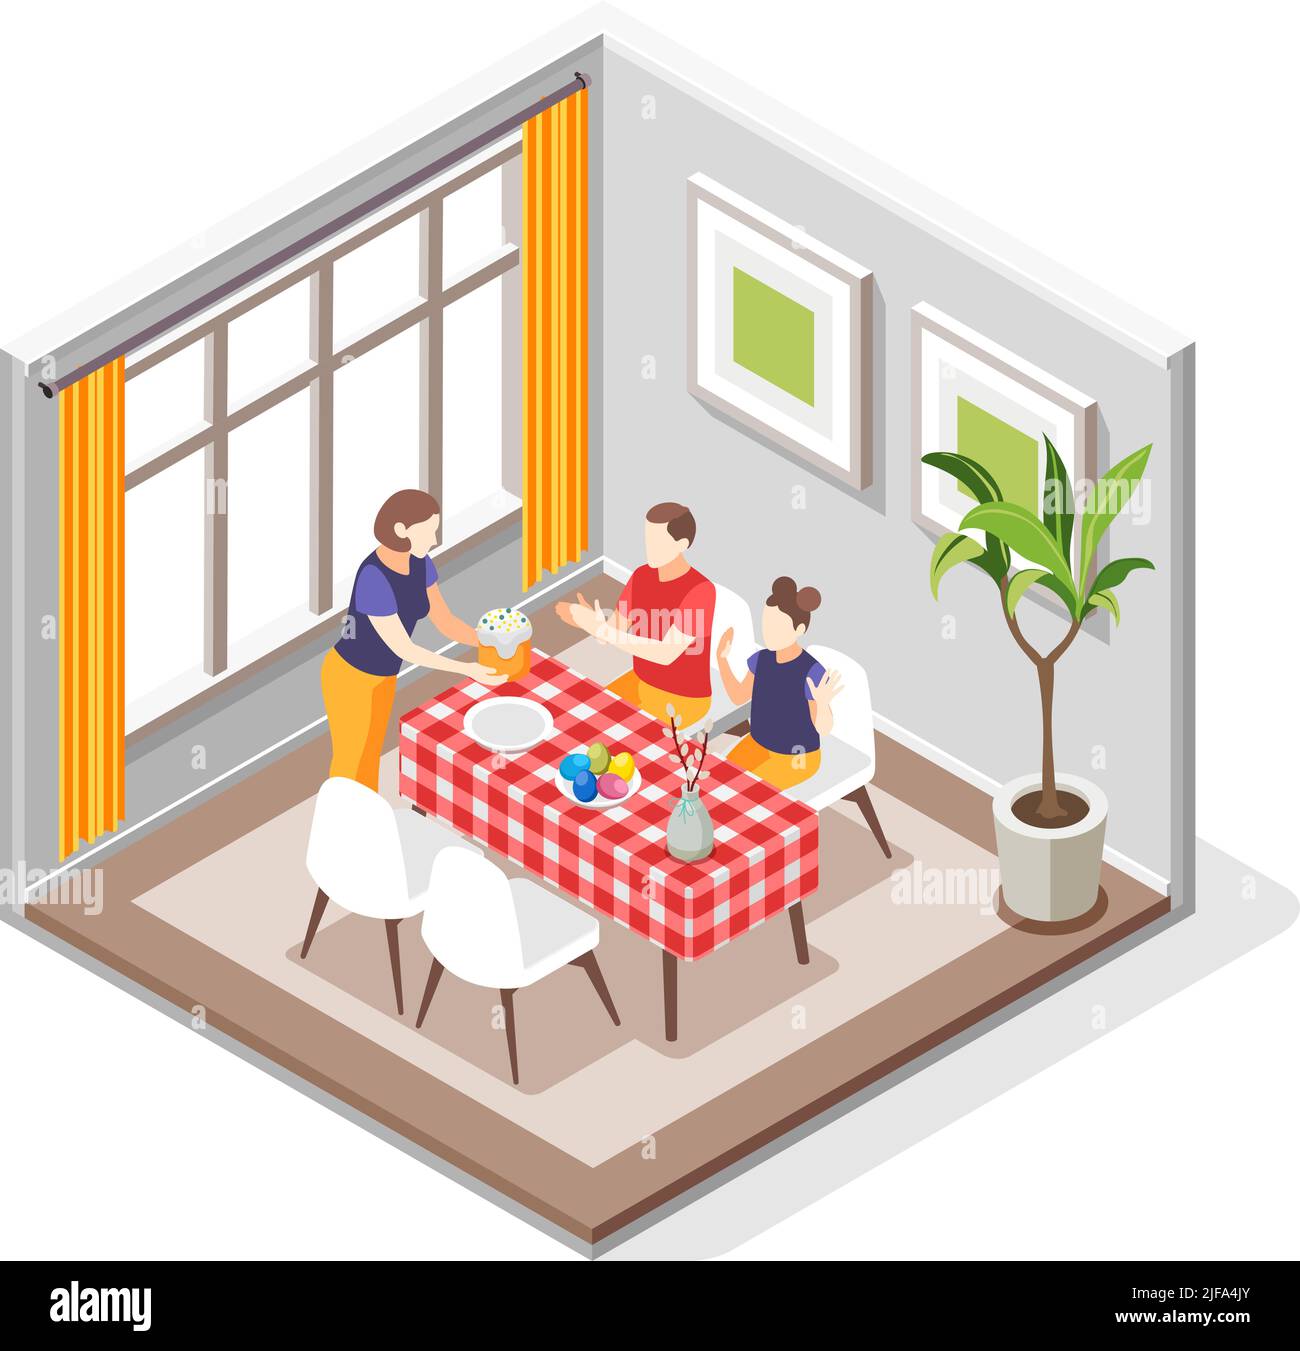 Ostern isometrische Komposition mit Blick auf das Esszimmer mit Familienmitglieder sitzen am Tisch mit Kuchen Vektor-Illustration Stock Vektor